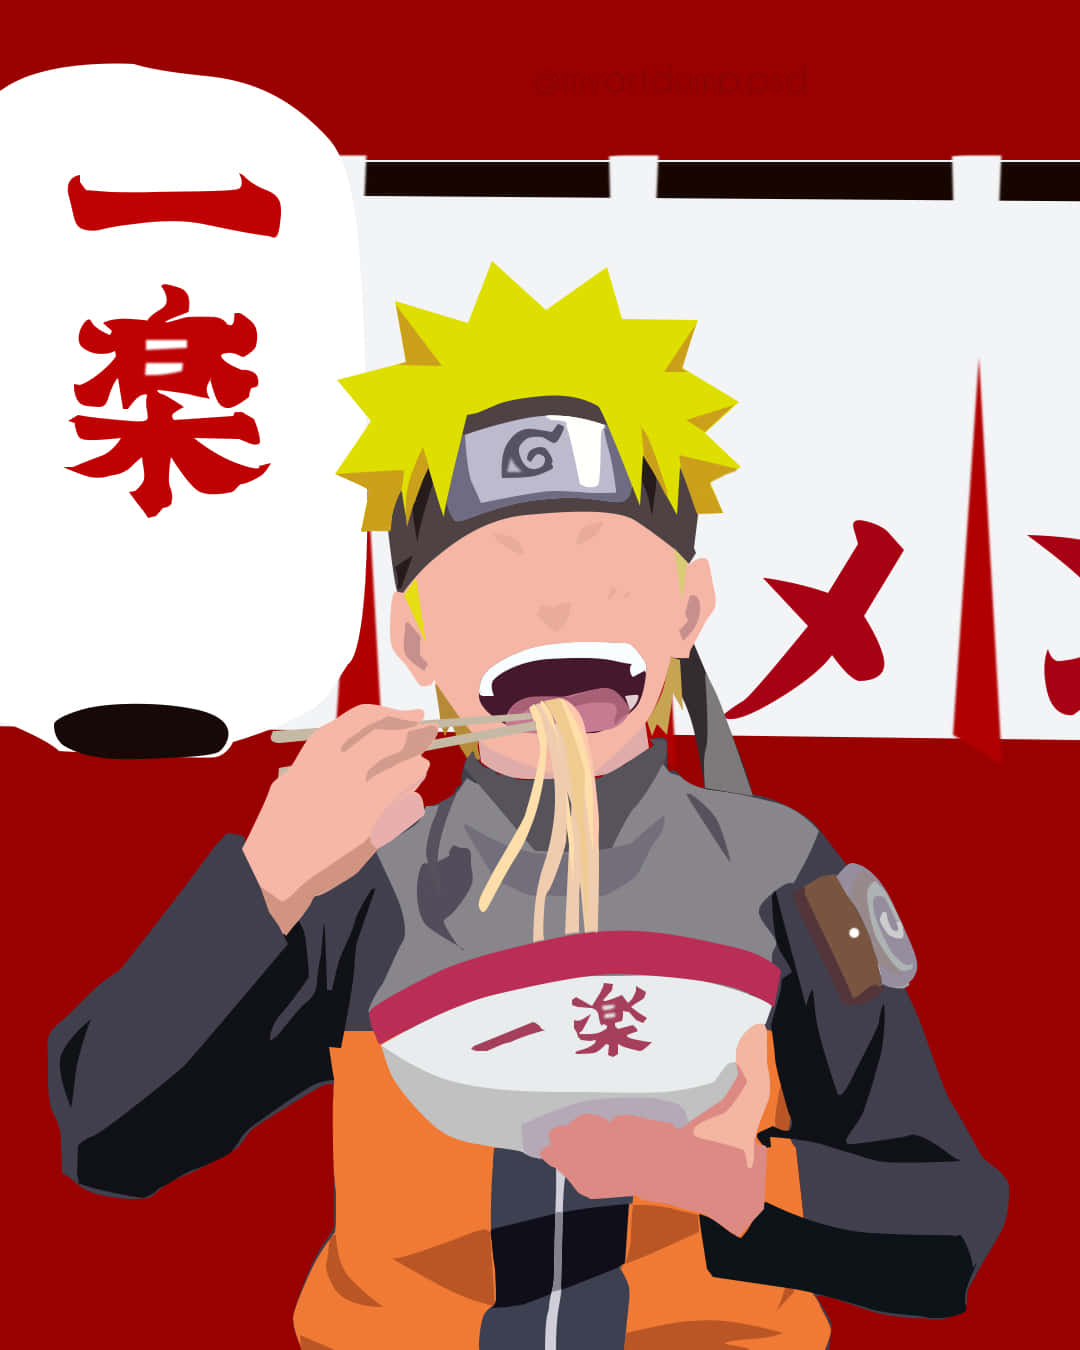 Nyd en lækker skål Naruto Ramen! Wallpaper